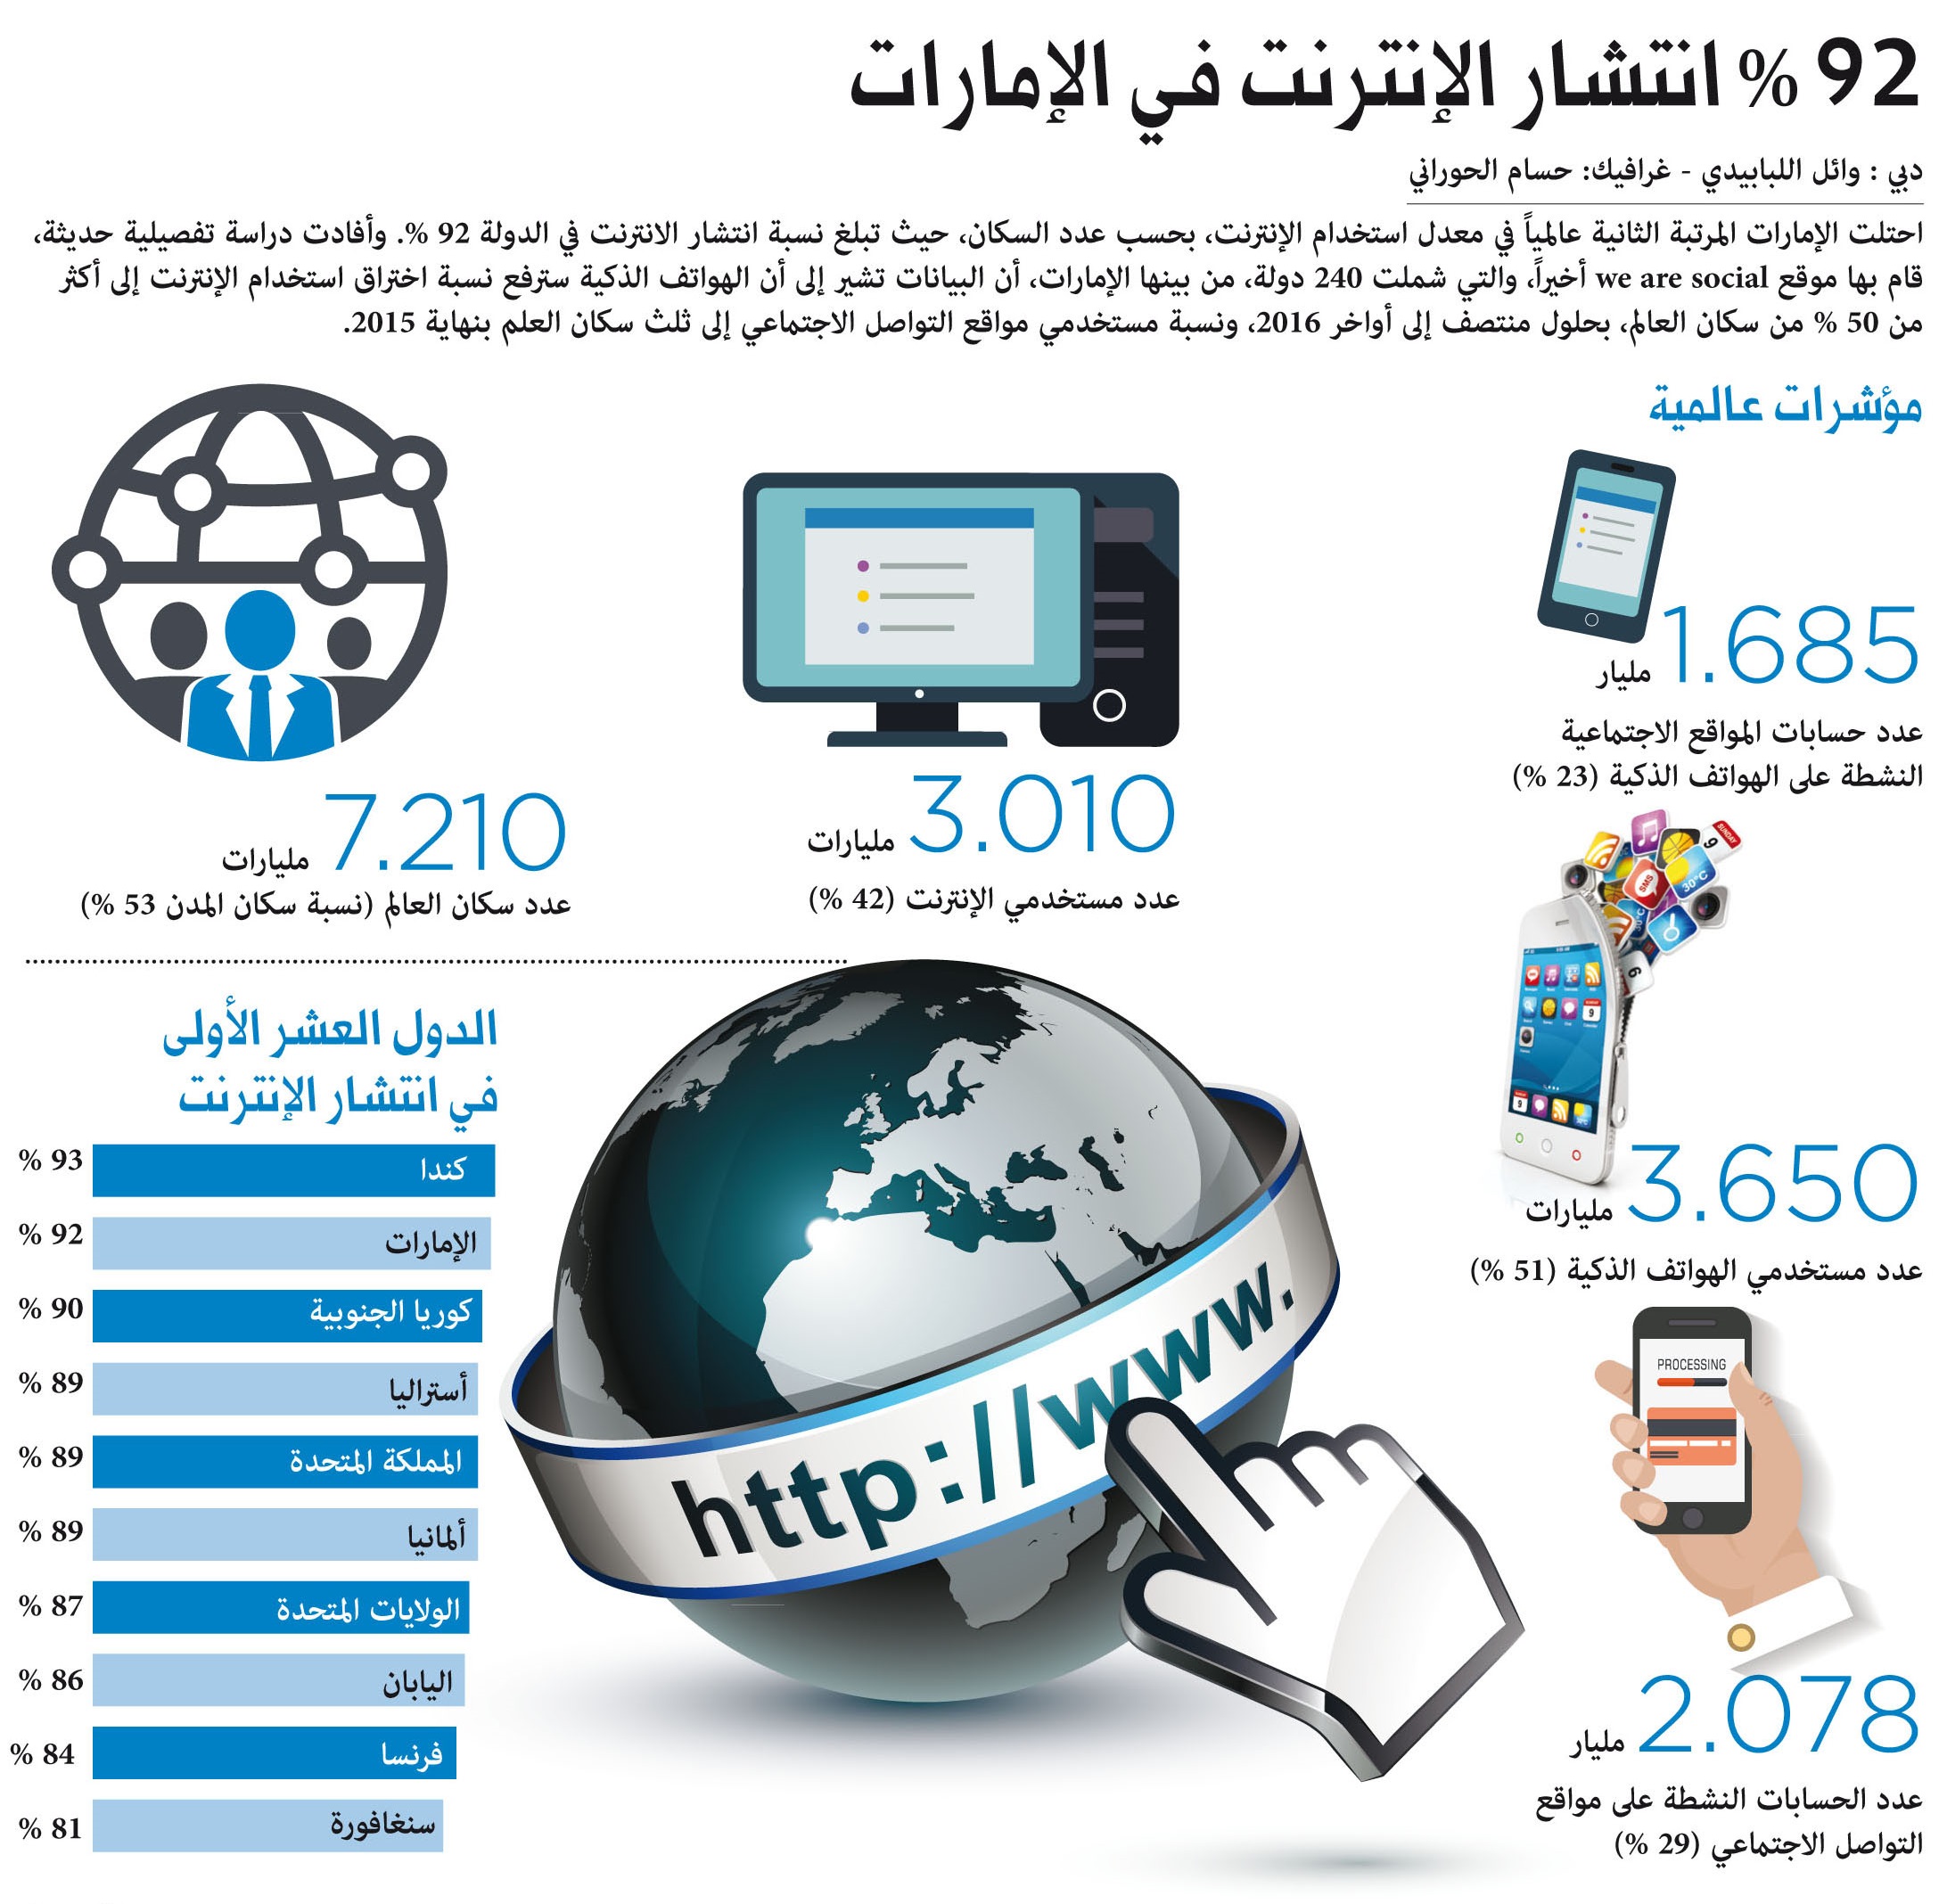 الإمارات المرتبة الثانية عالمياً في معدل اختراق الإنترنت